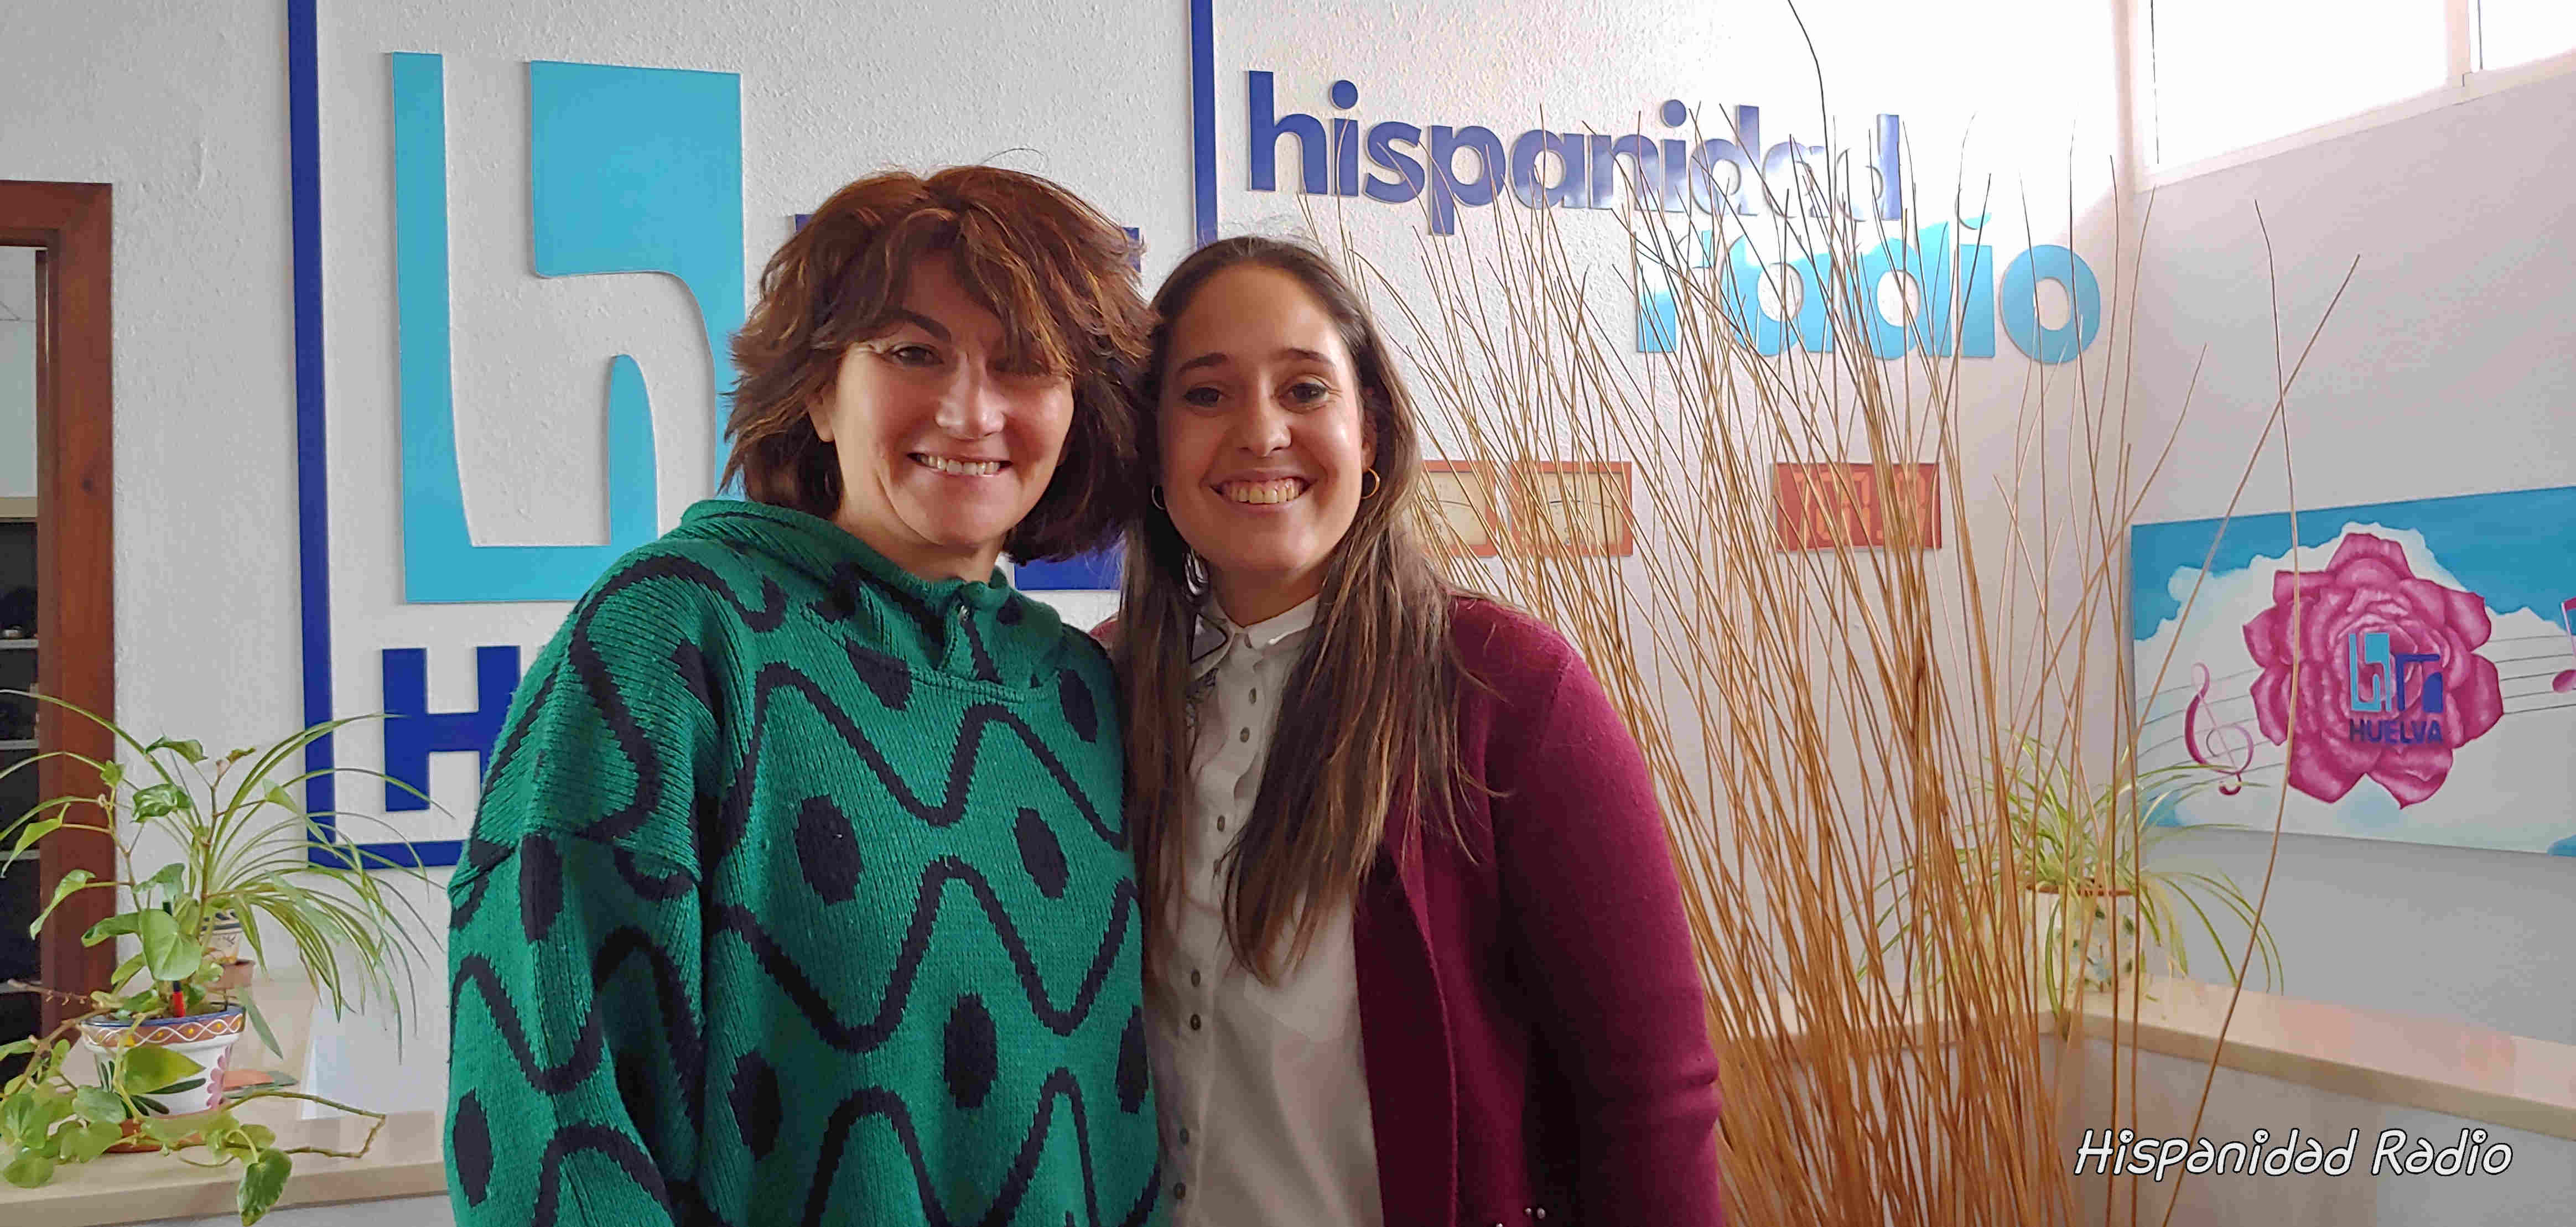 Queremos Saber 24-04-2019- Desirée Márquez, Candidata a Hermana Mayor Romeria 2020 Hermandad del Rocio de Huelva